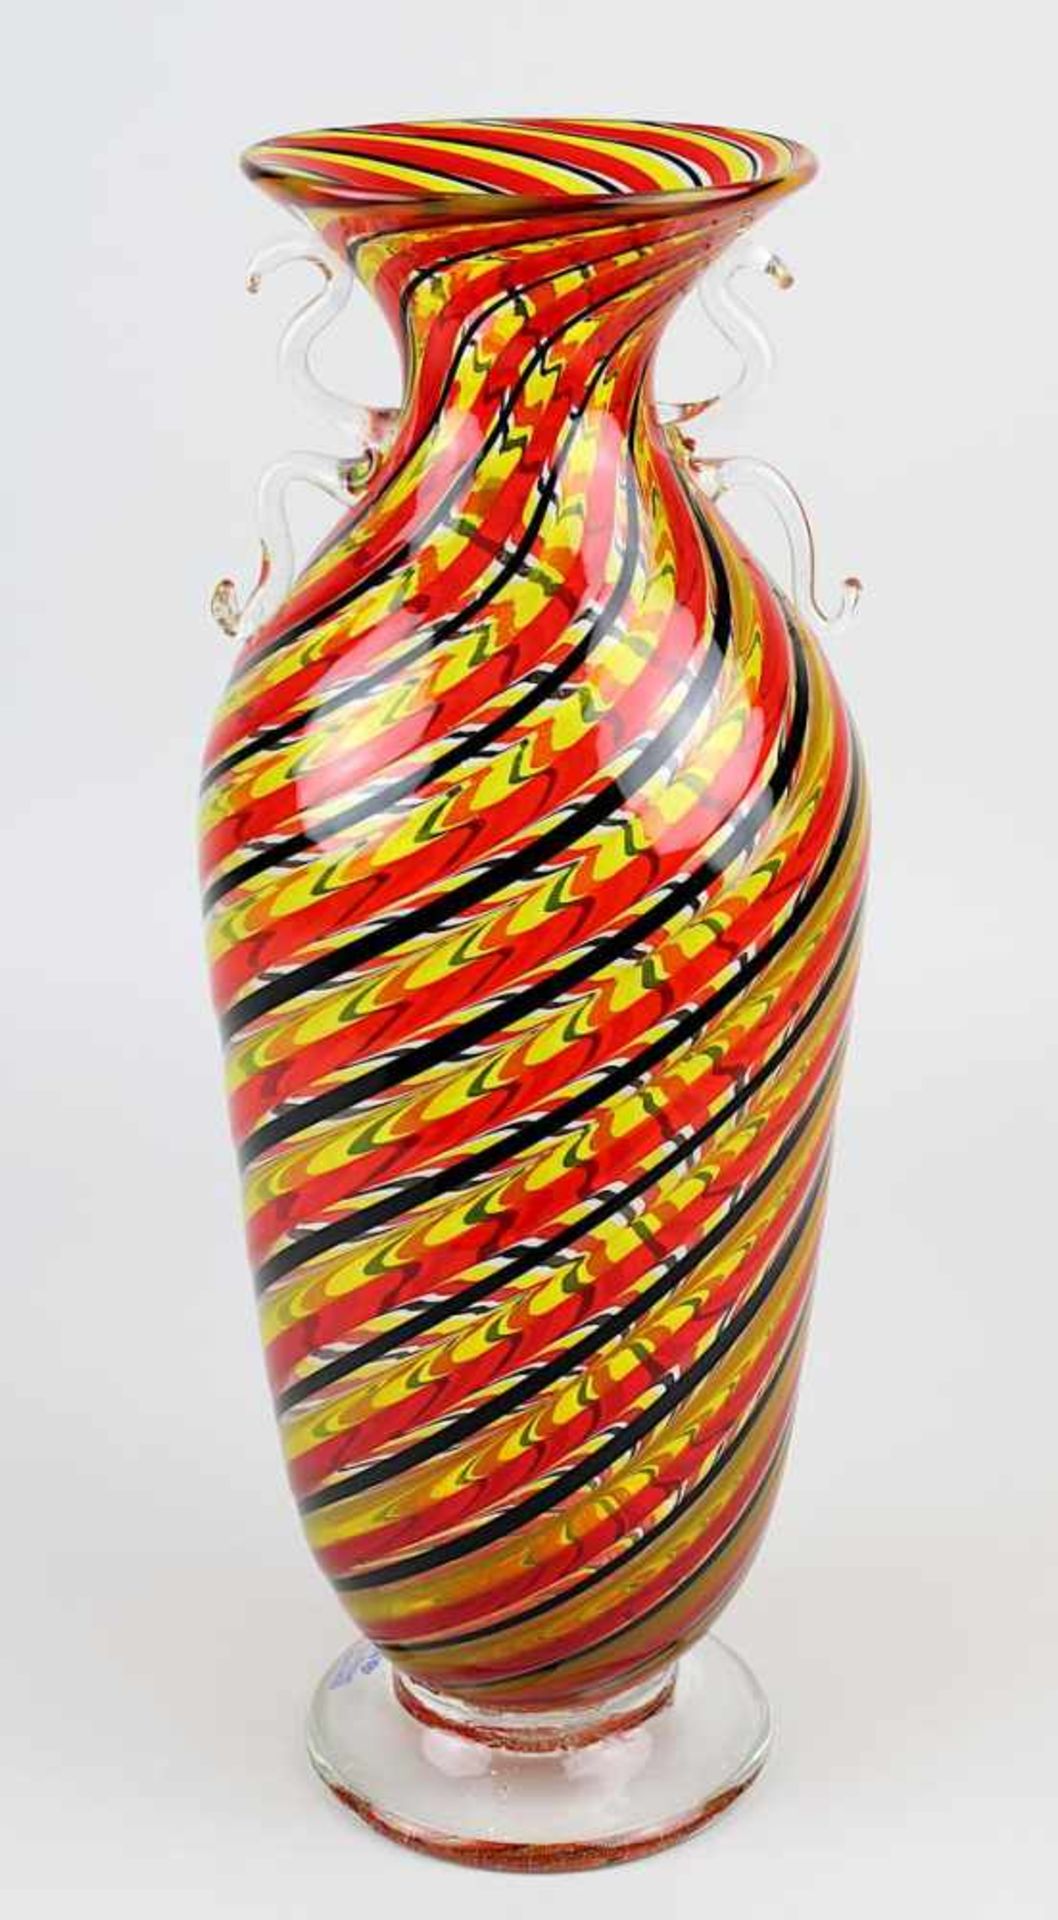 Murano Glasvase mit Glasfäden, Elli Toso, um 1990, amphorenförmiger Glaskörper mit in Spiralform